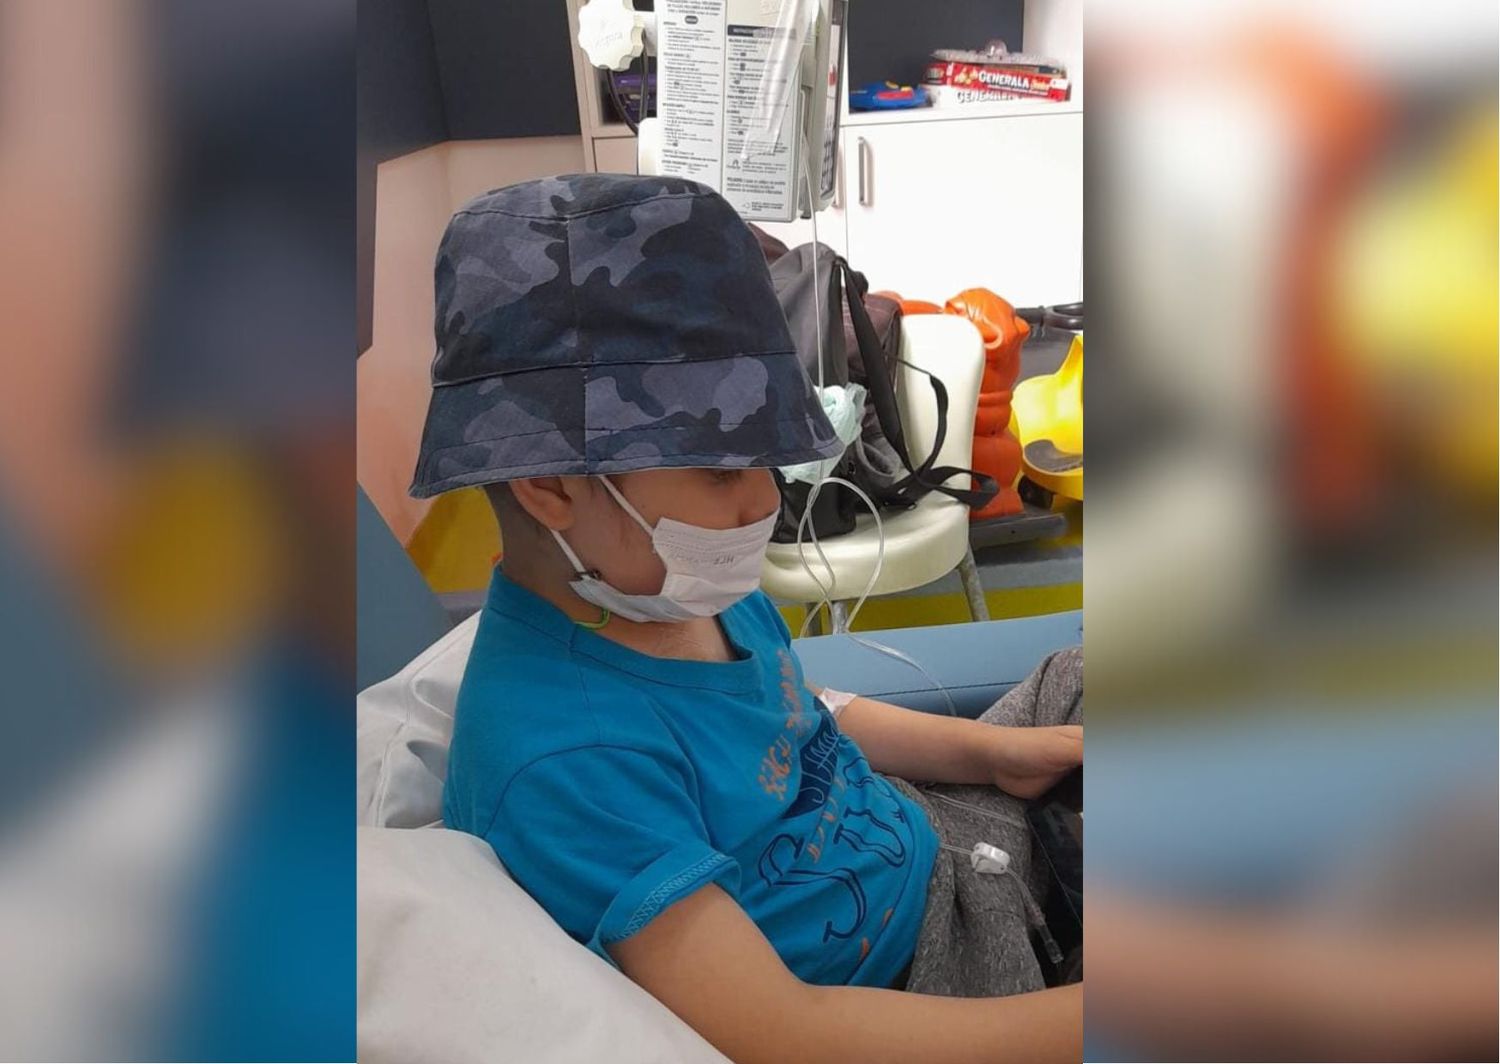 Organizan una rifa para cubrir el tratamiento de Martín, el niño de 5 años diagnosticado con leucemia linfoblástica